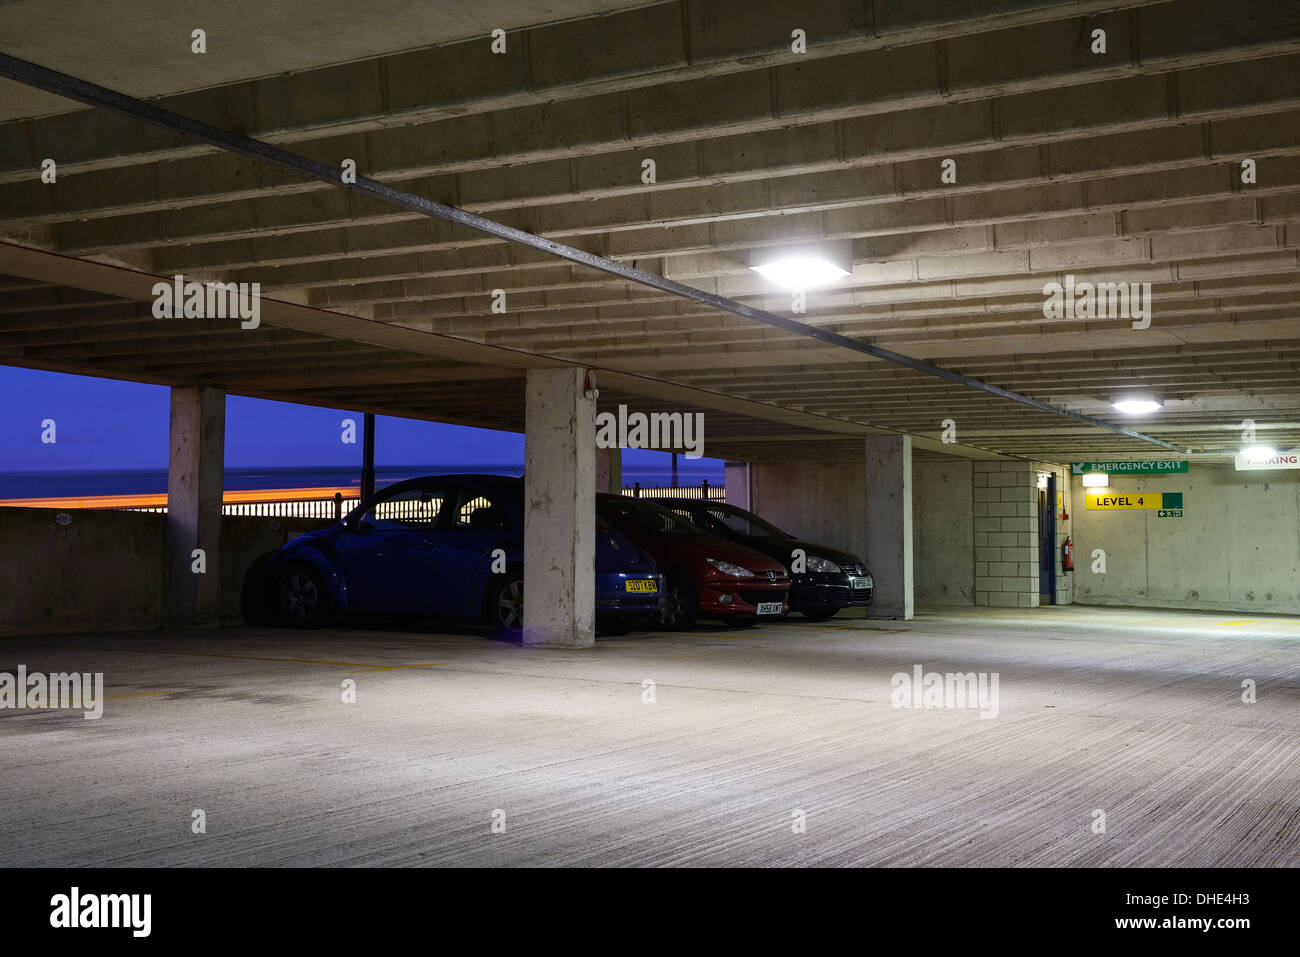 Voitures garées dans un parking de plusieurs étages dans la nuit Banque D'Images